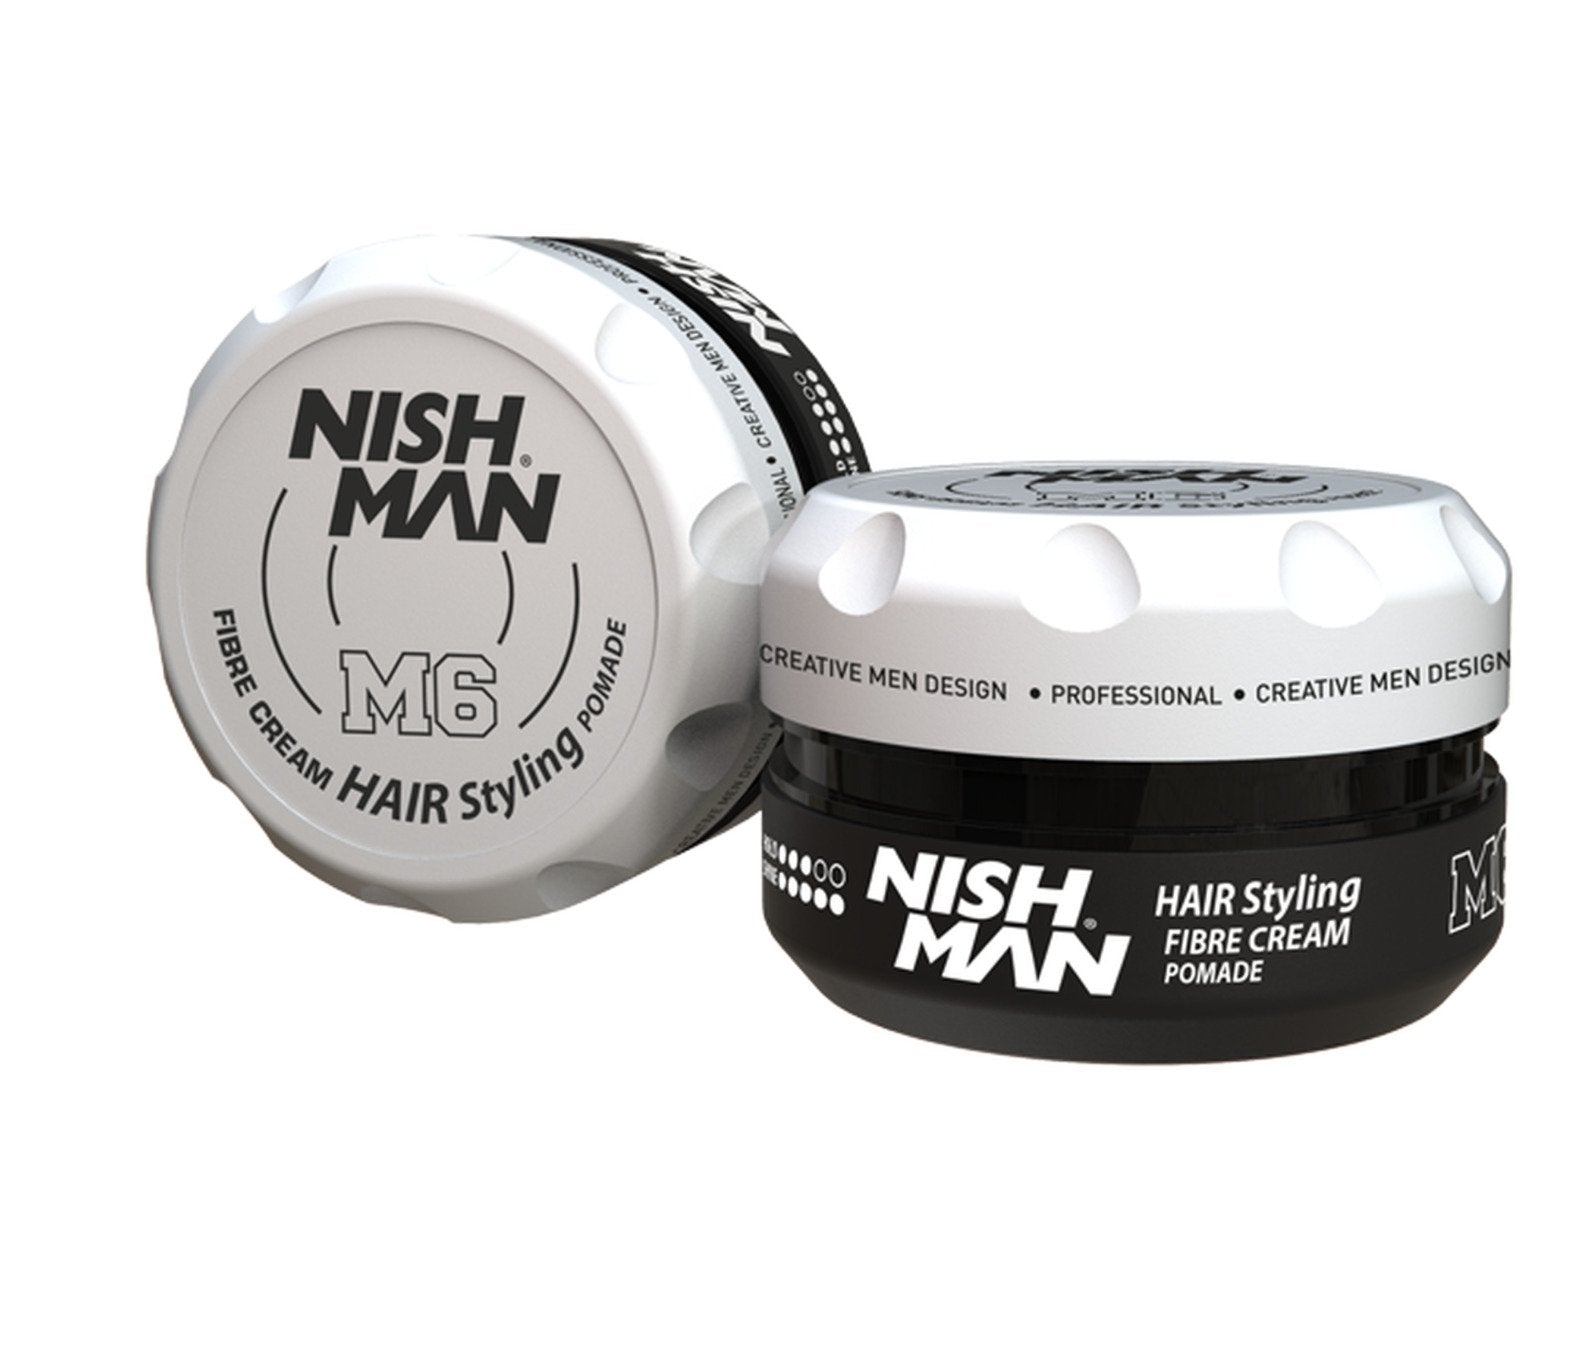 Nishman Hair Styling Spider Wax & Nishman Hair Styling Gel Gum Effect by  Nishman 